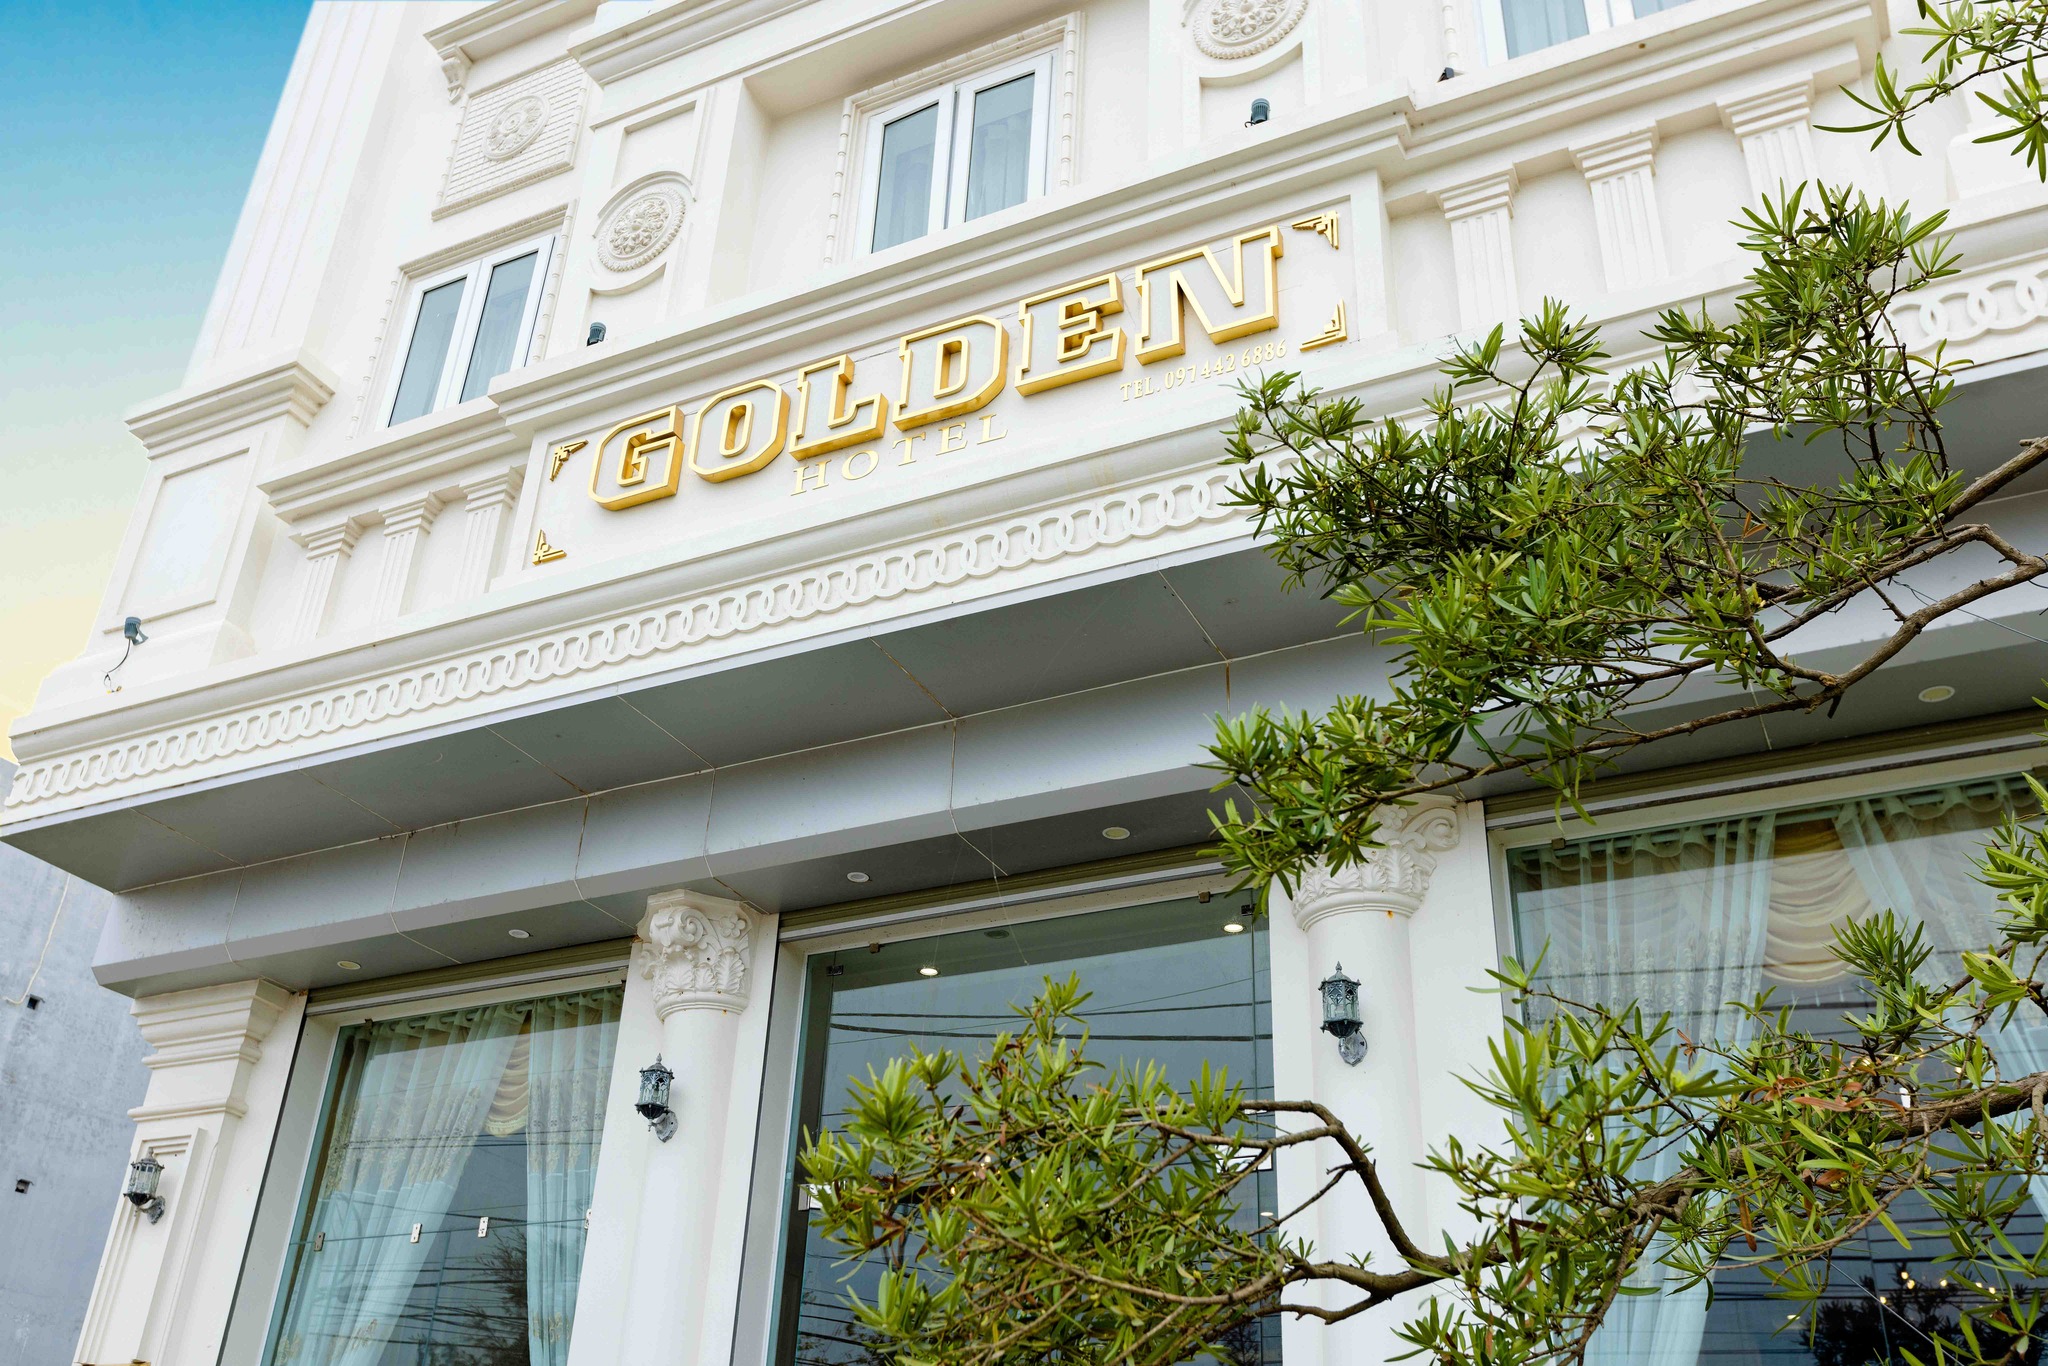 Ảnh: Fb Golden Coto Hotel - Khách sạn Đảo Cô Tô